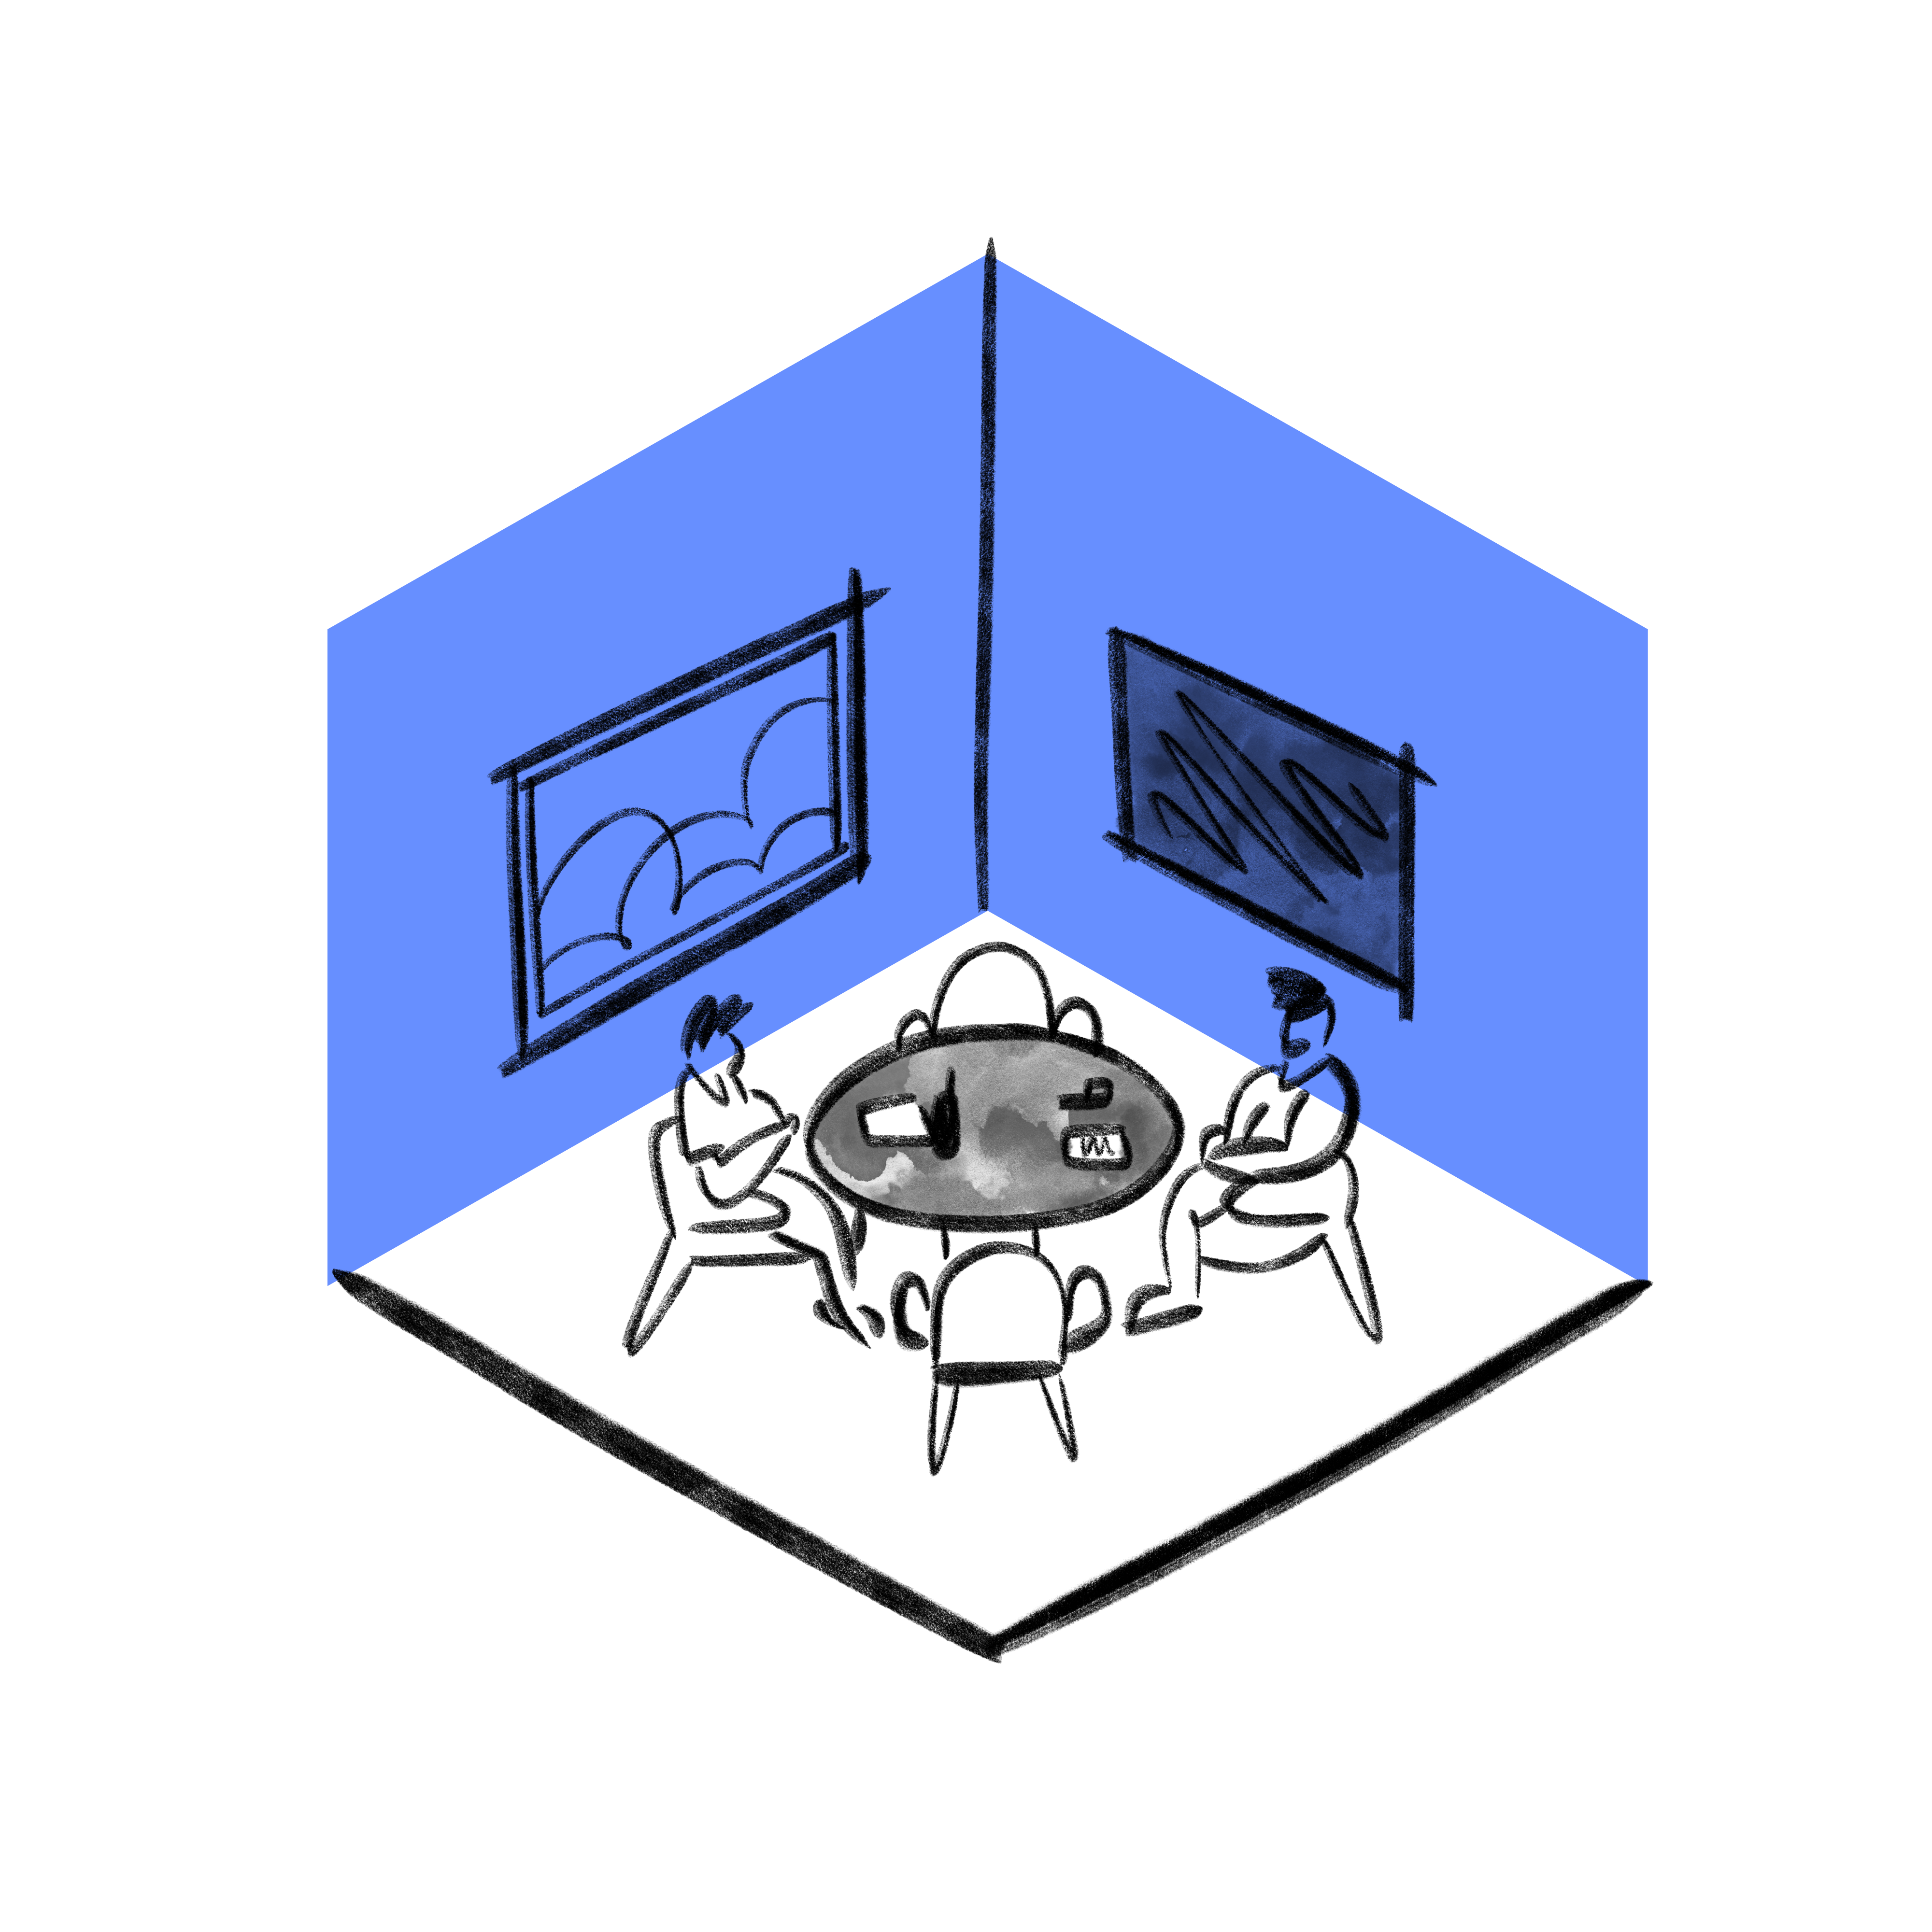 workspace-meeting-rooms-blue